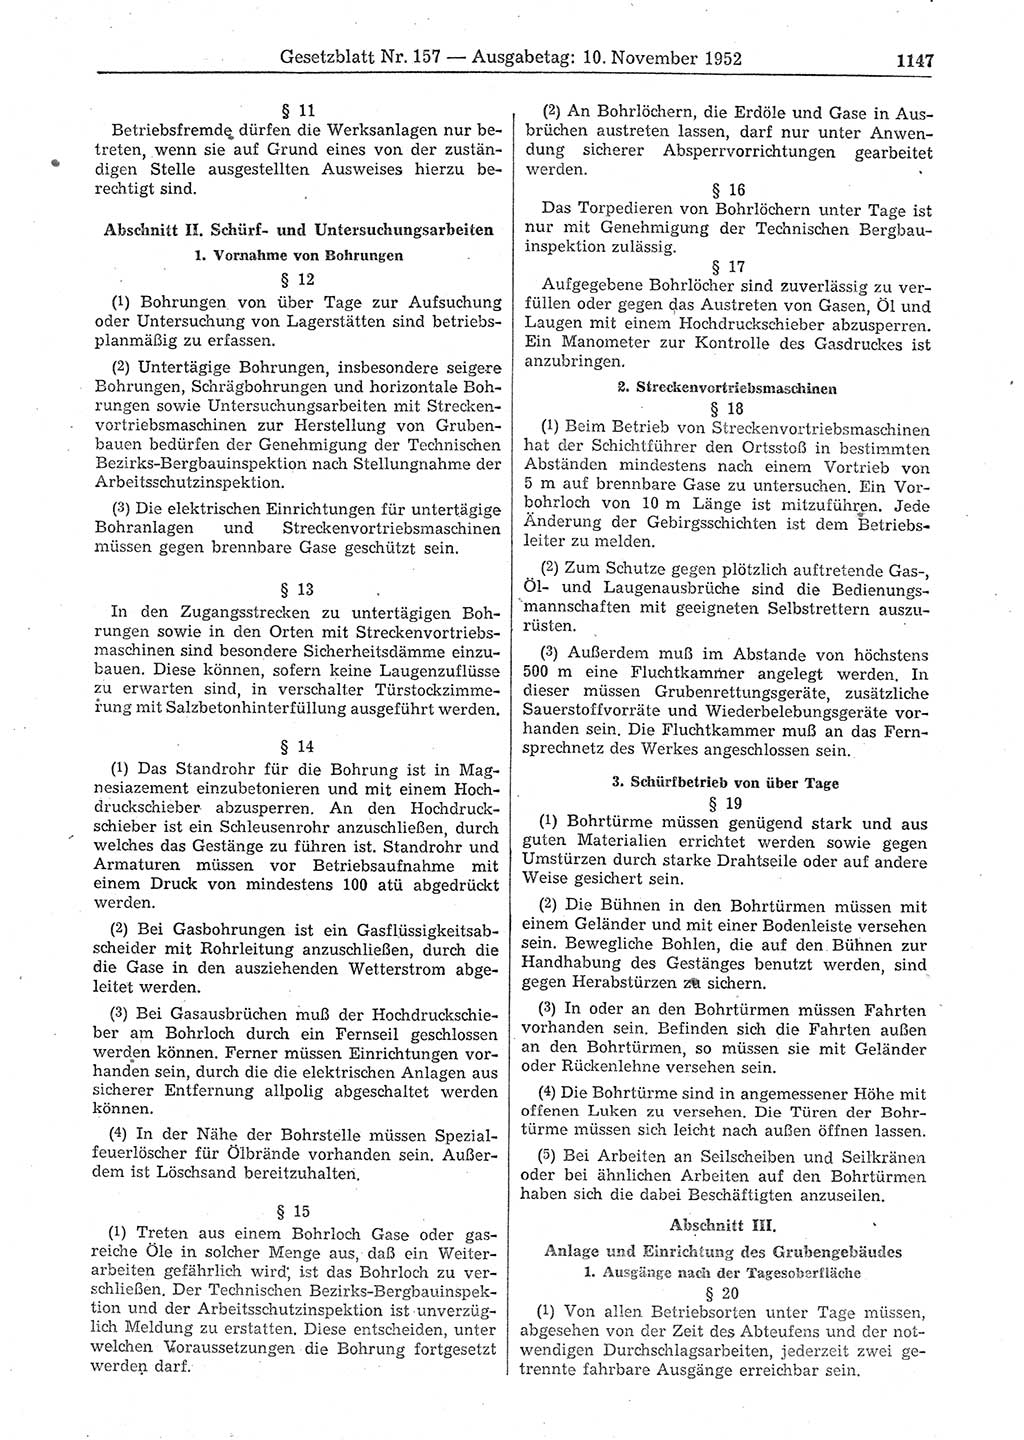 Gesetzblatt (GBl.) der Deutschen Demokratischen Republik (DDR) 1952, Seite 1147 (GBl. DDR 1952, S. 1147)